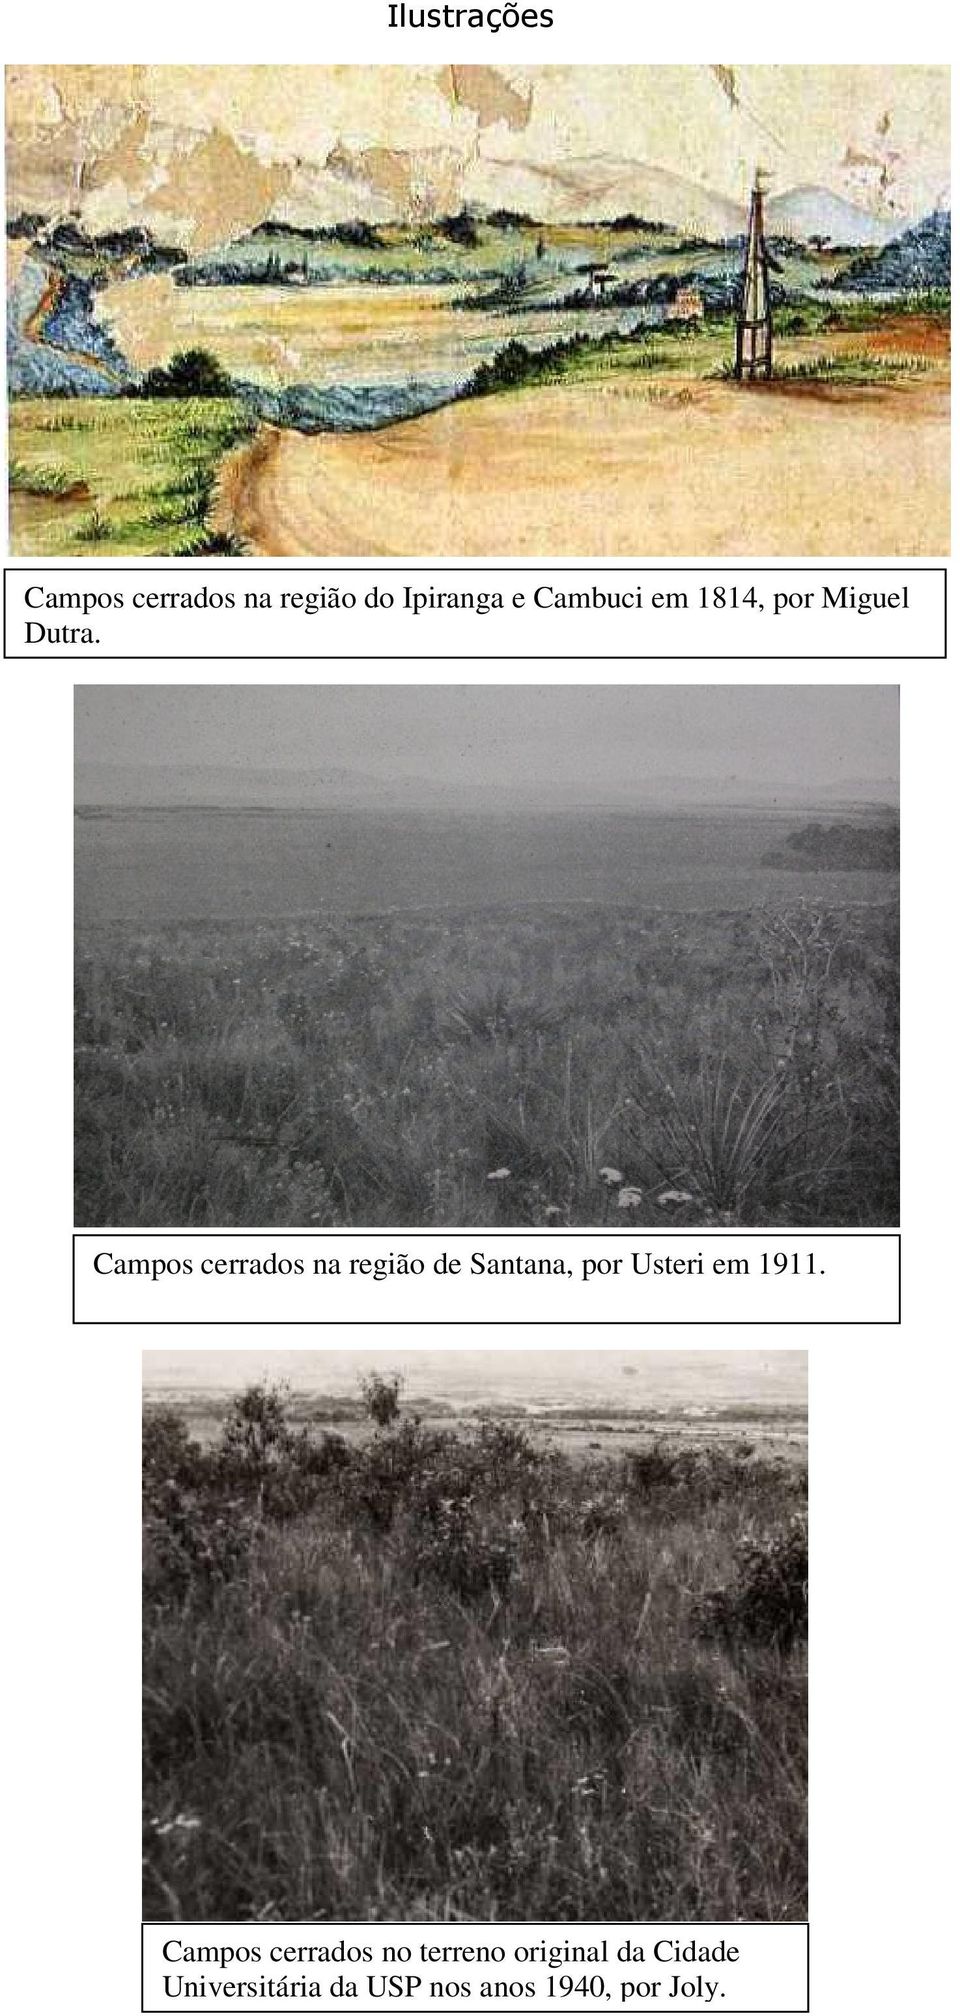 Campos cerrados na região de Santana, por Usteri em 1911.